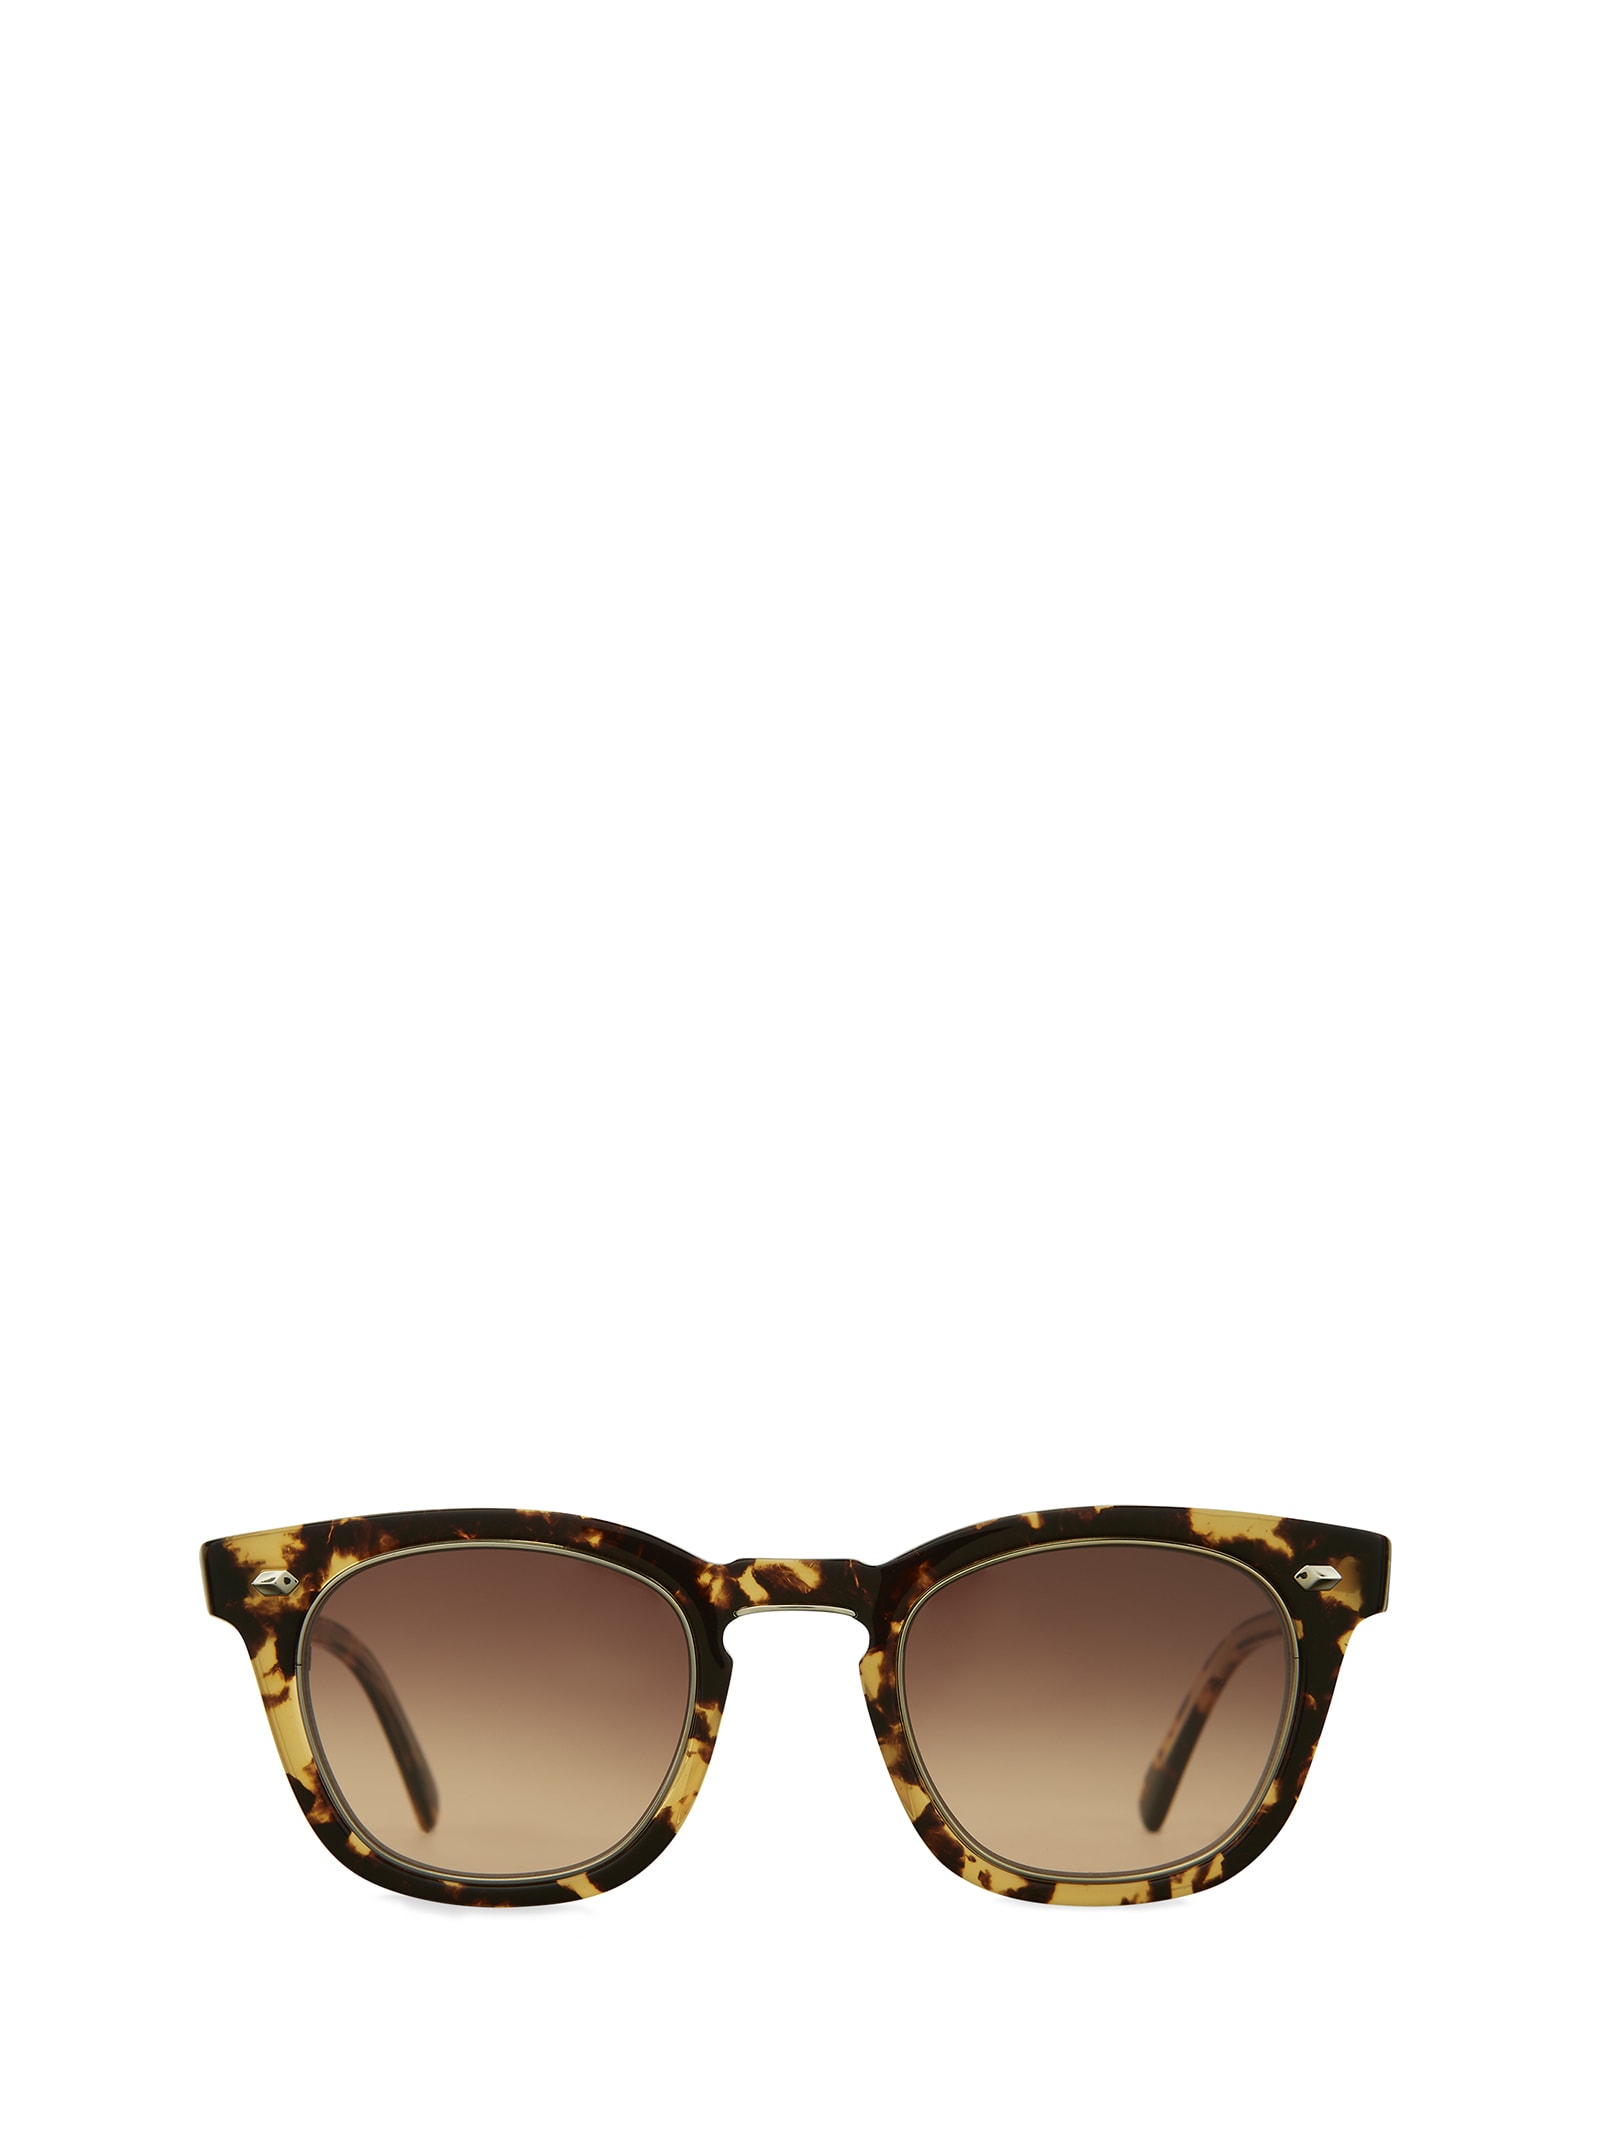 Hanalei S Bohemian Tortoise - 12k White Gold Sunglasses